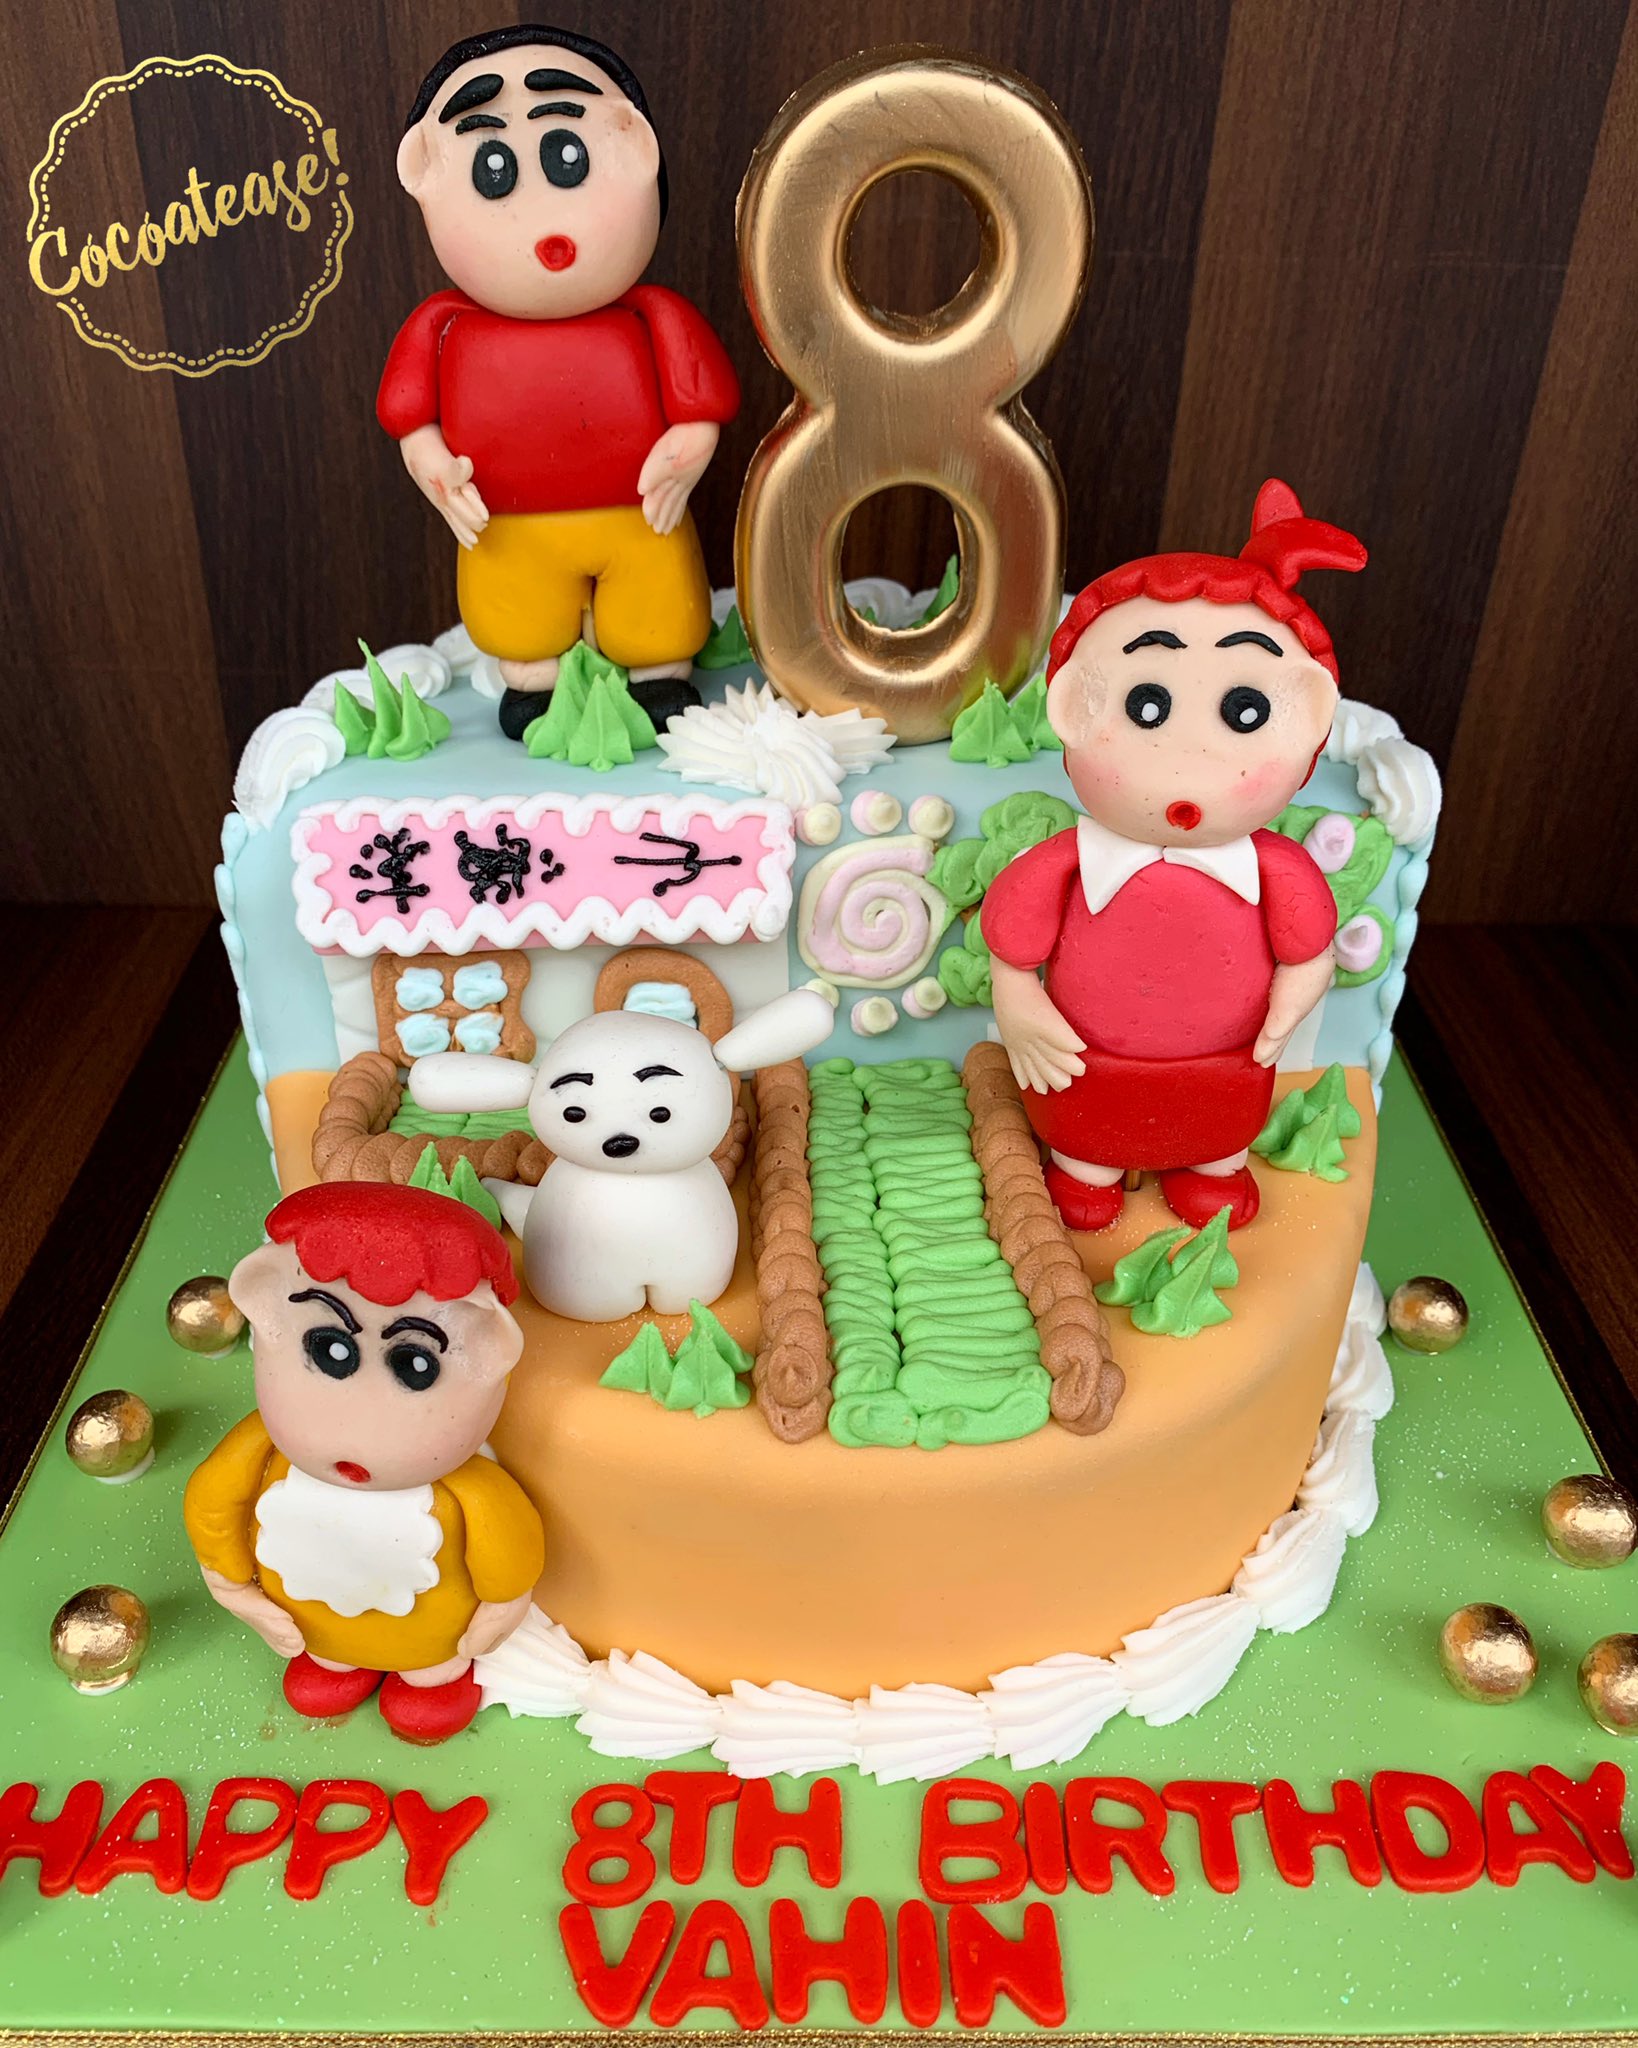 توییتر \ Cocoatease! در توییتر: «“Never make the same mistake twice. Make  it 5-6 times just to be sure.”😅😅😅One for all the Shinchan lovers! # shinchan #cartoon #instakids #belgian #chocolate #caramel #birthday #cake #